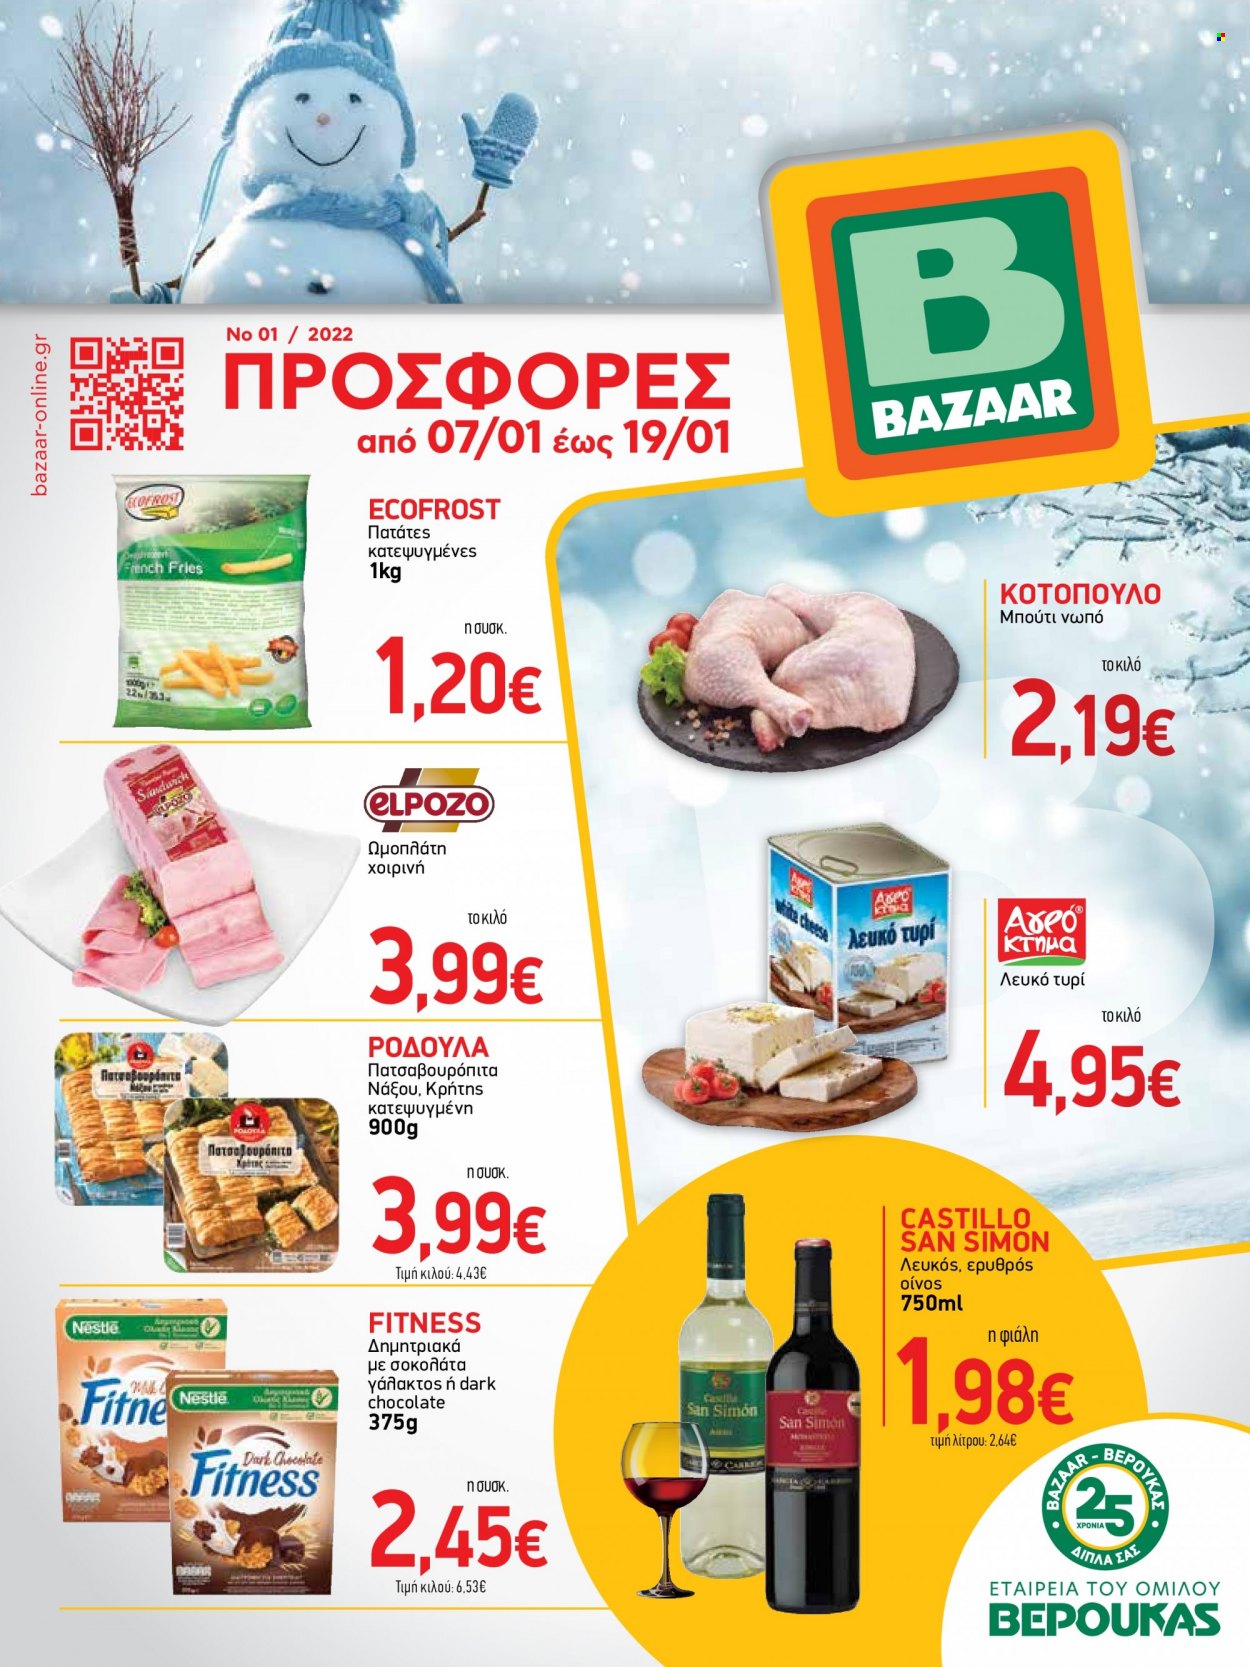 Φυλλάδια Bazaar - 07.01.2022 - 19.01.2022 - Εκπτωτικά προϊόντα - πατάτες, κοτόπουλο, Nestlé. Σελίδα 1.